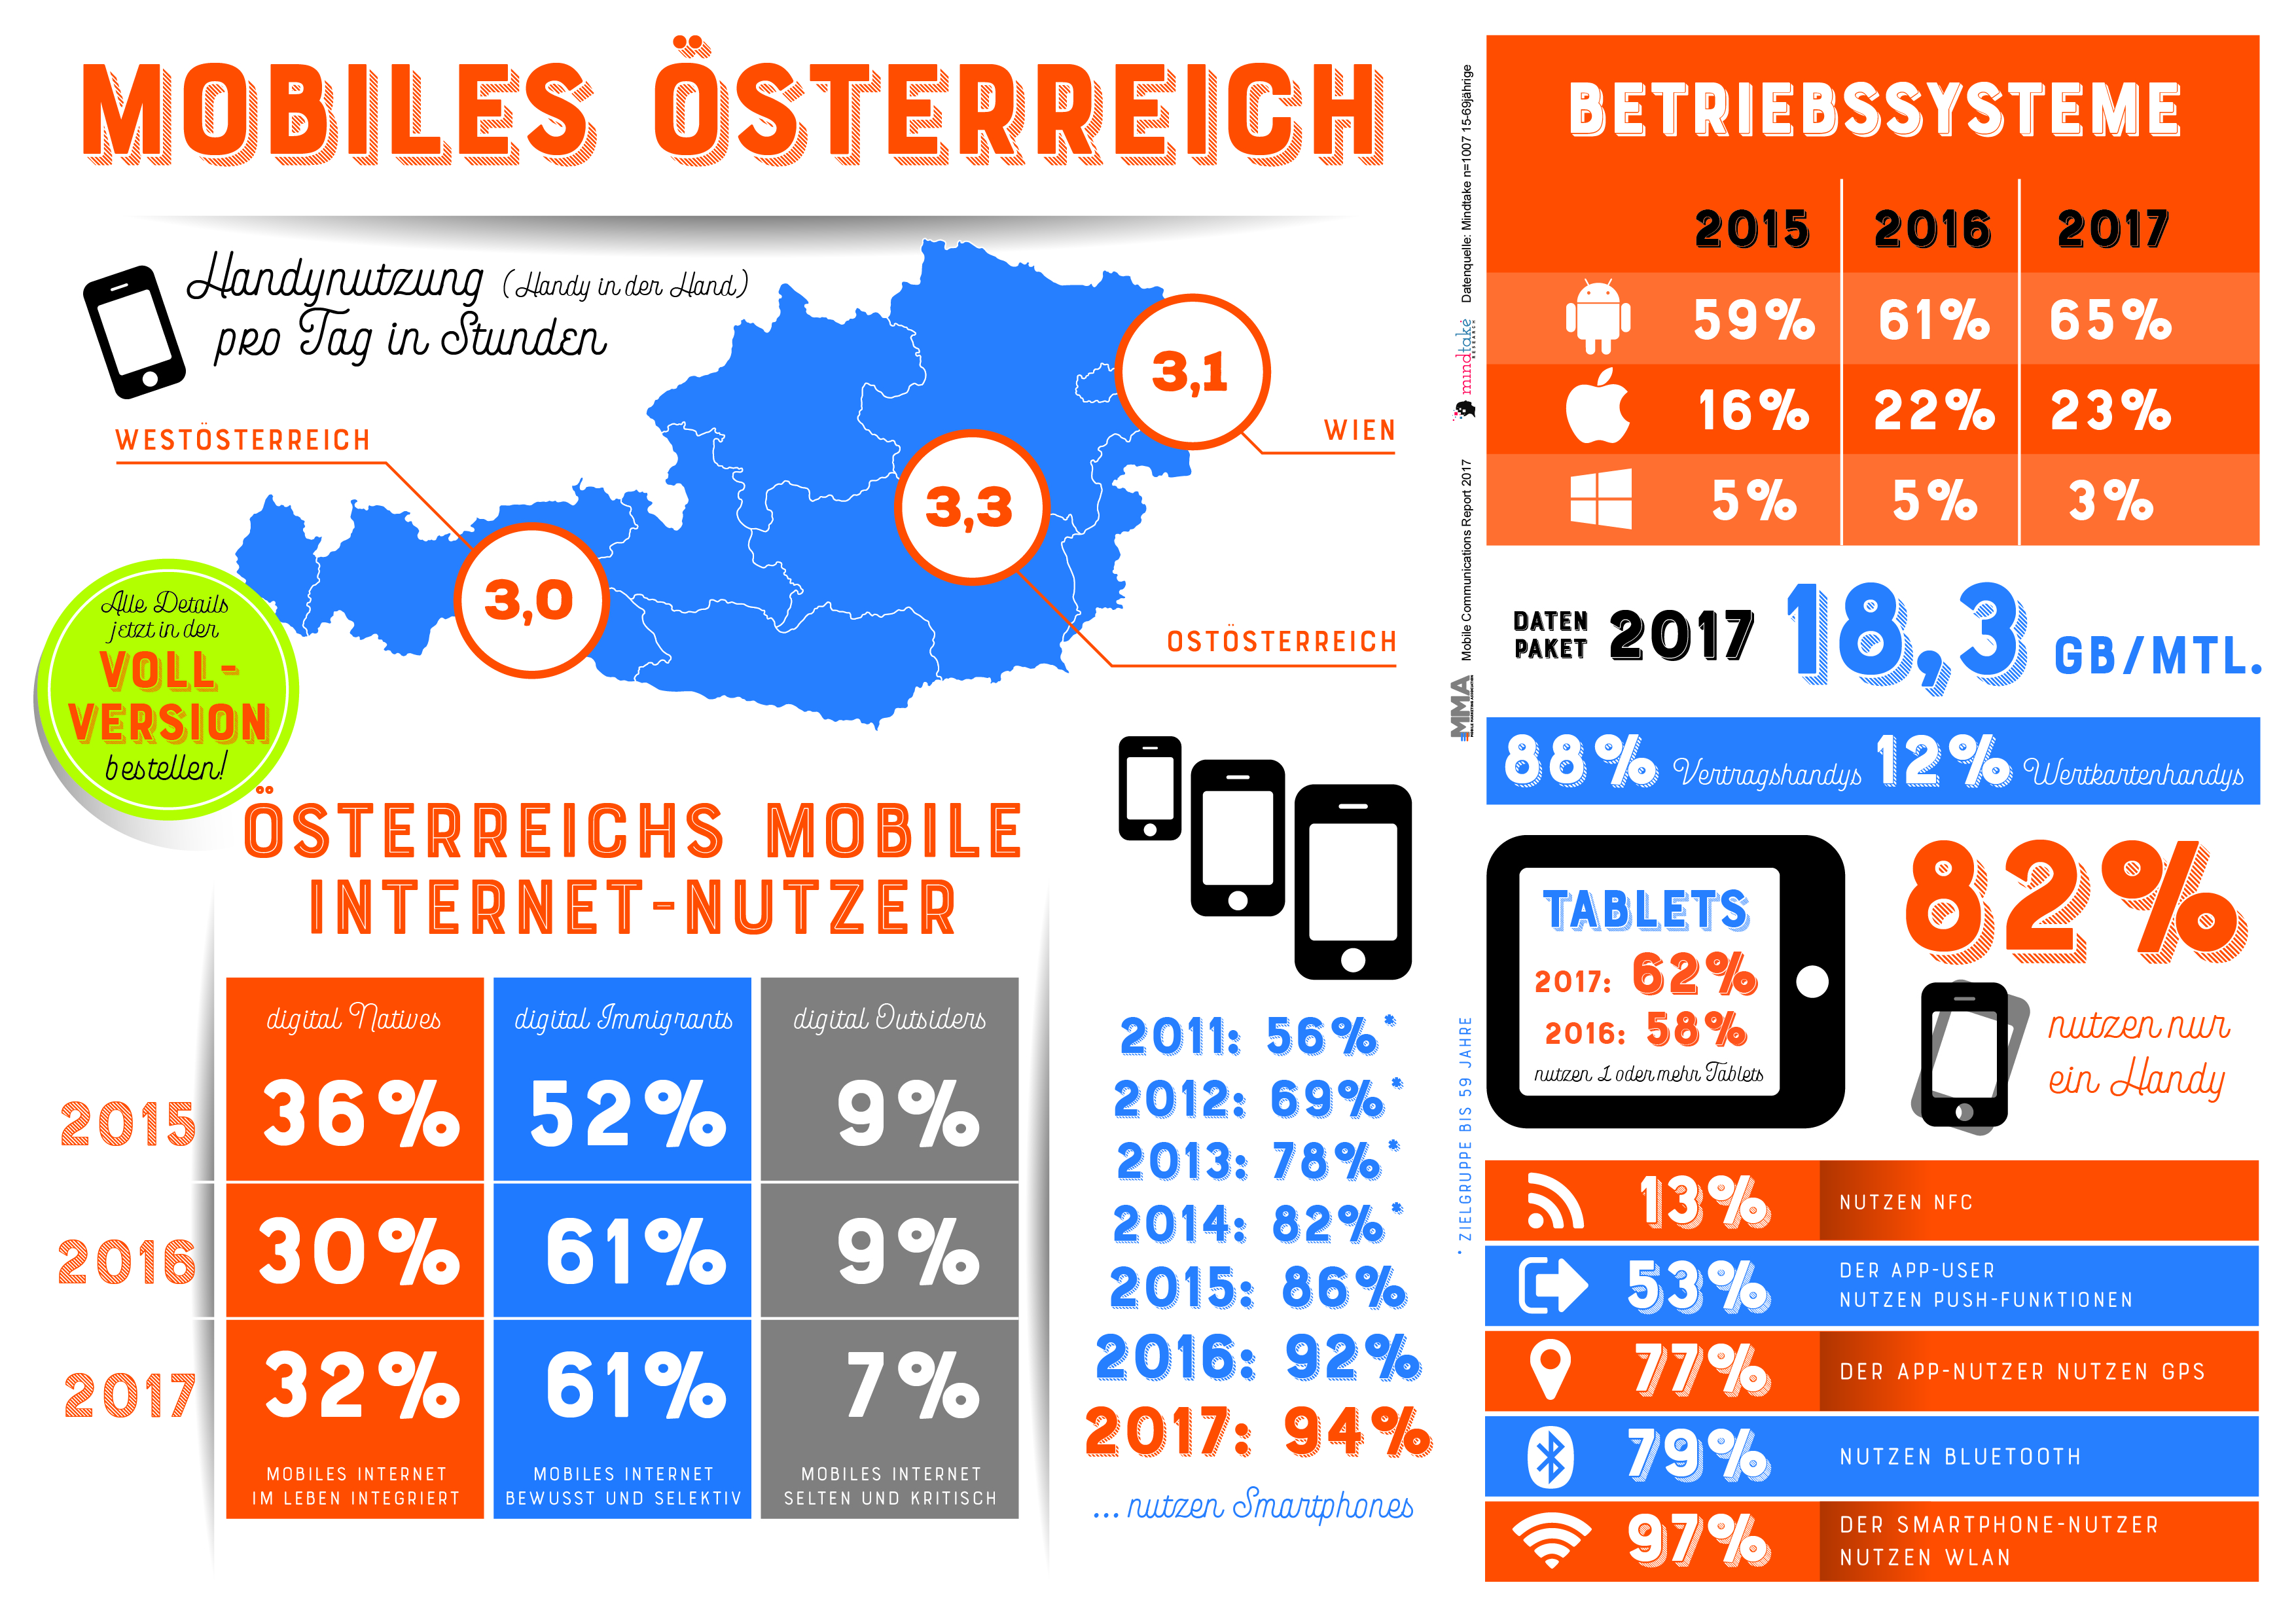 Österreicher nutzen ihr Mobiltelefon bereits mehr als drei Stunden pro Tag